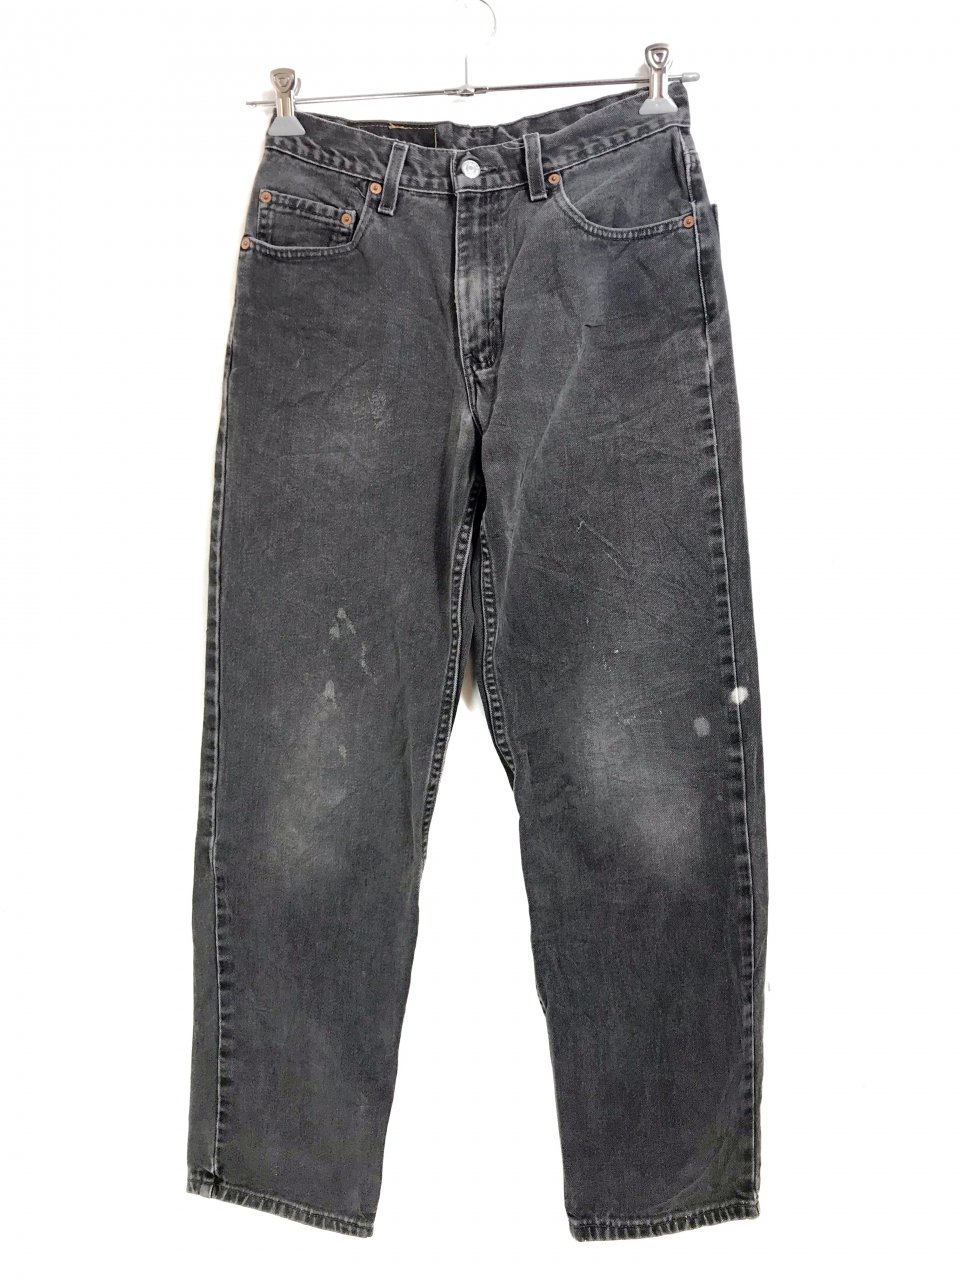 00s Levi's 550 Relaxed Fit Black Denim Pants 黒 30×30 Levis 